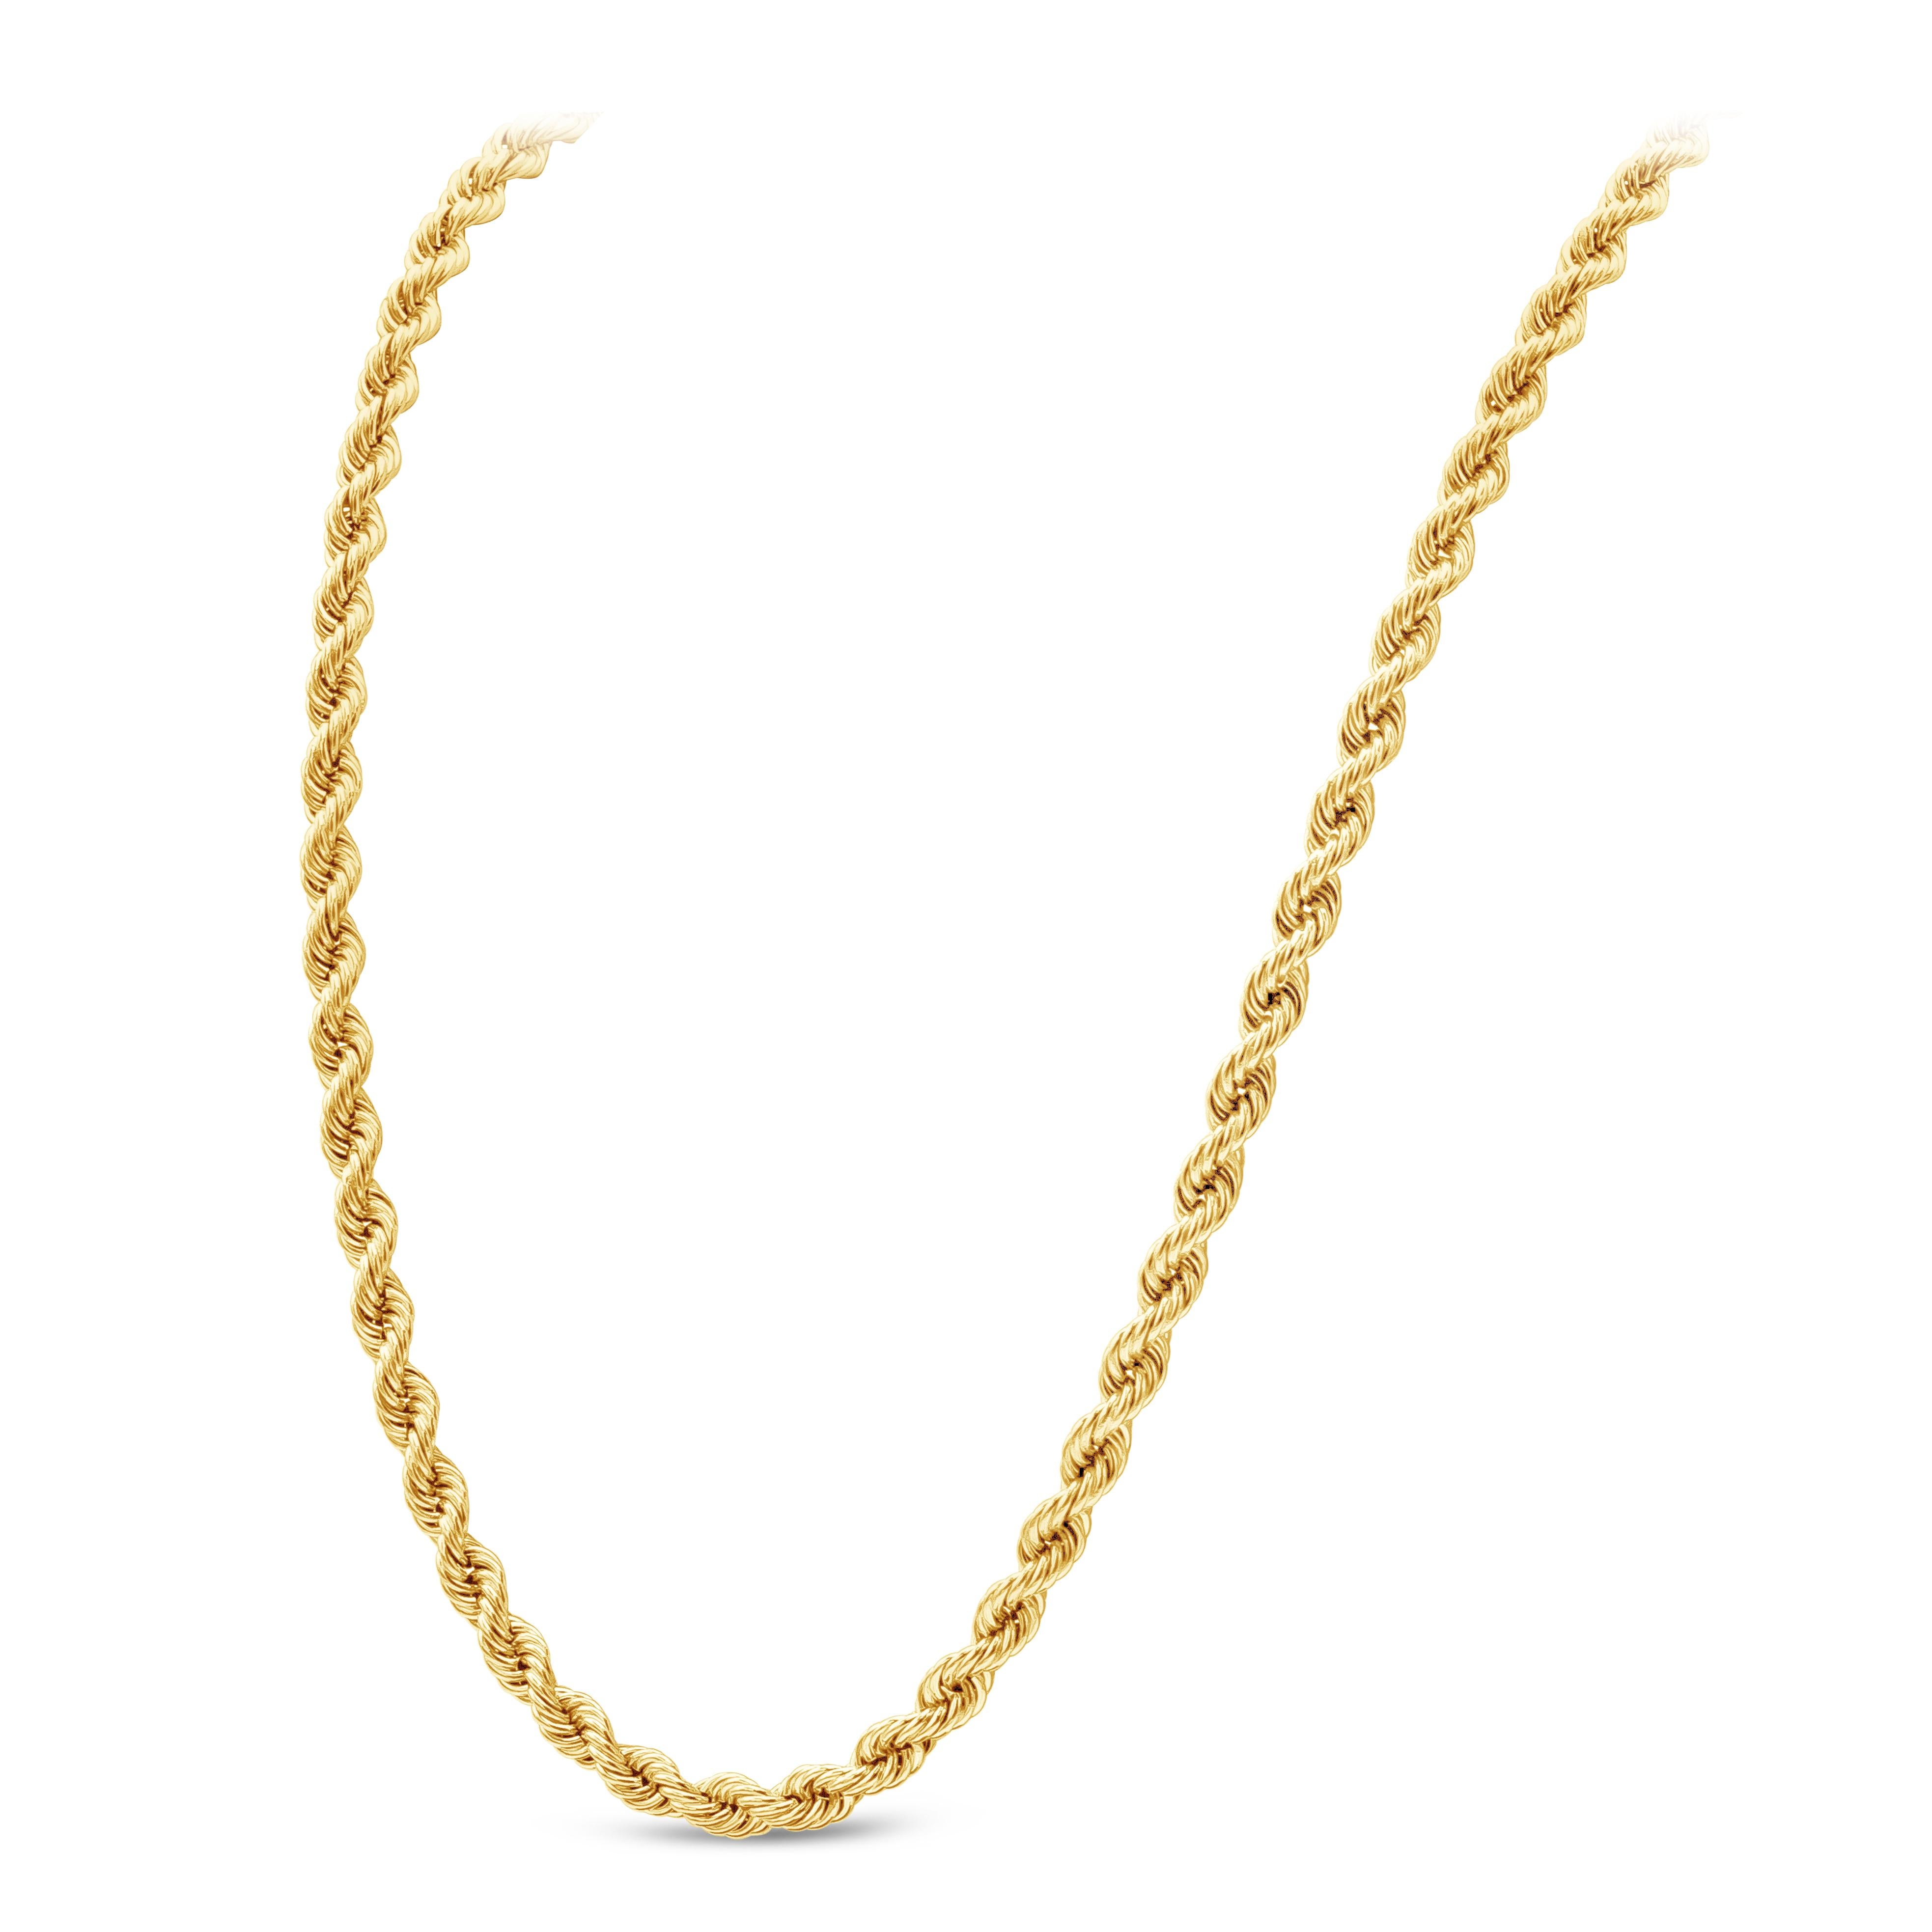 Eine klassische, schlichte Seilkette aus 14 Karat Gelbgold. Diese Halskette im gedrehten Stil wiegt 47 Gramm und hat eine Länge von 30 cm.
